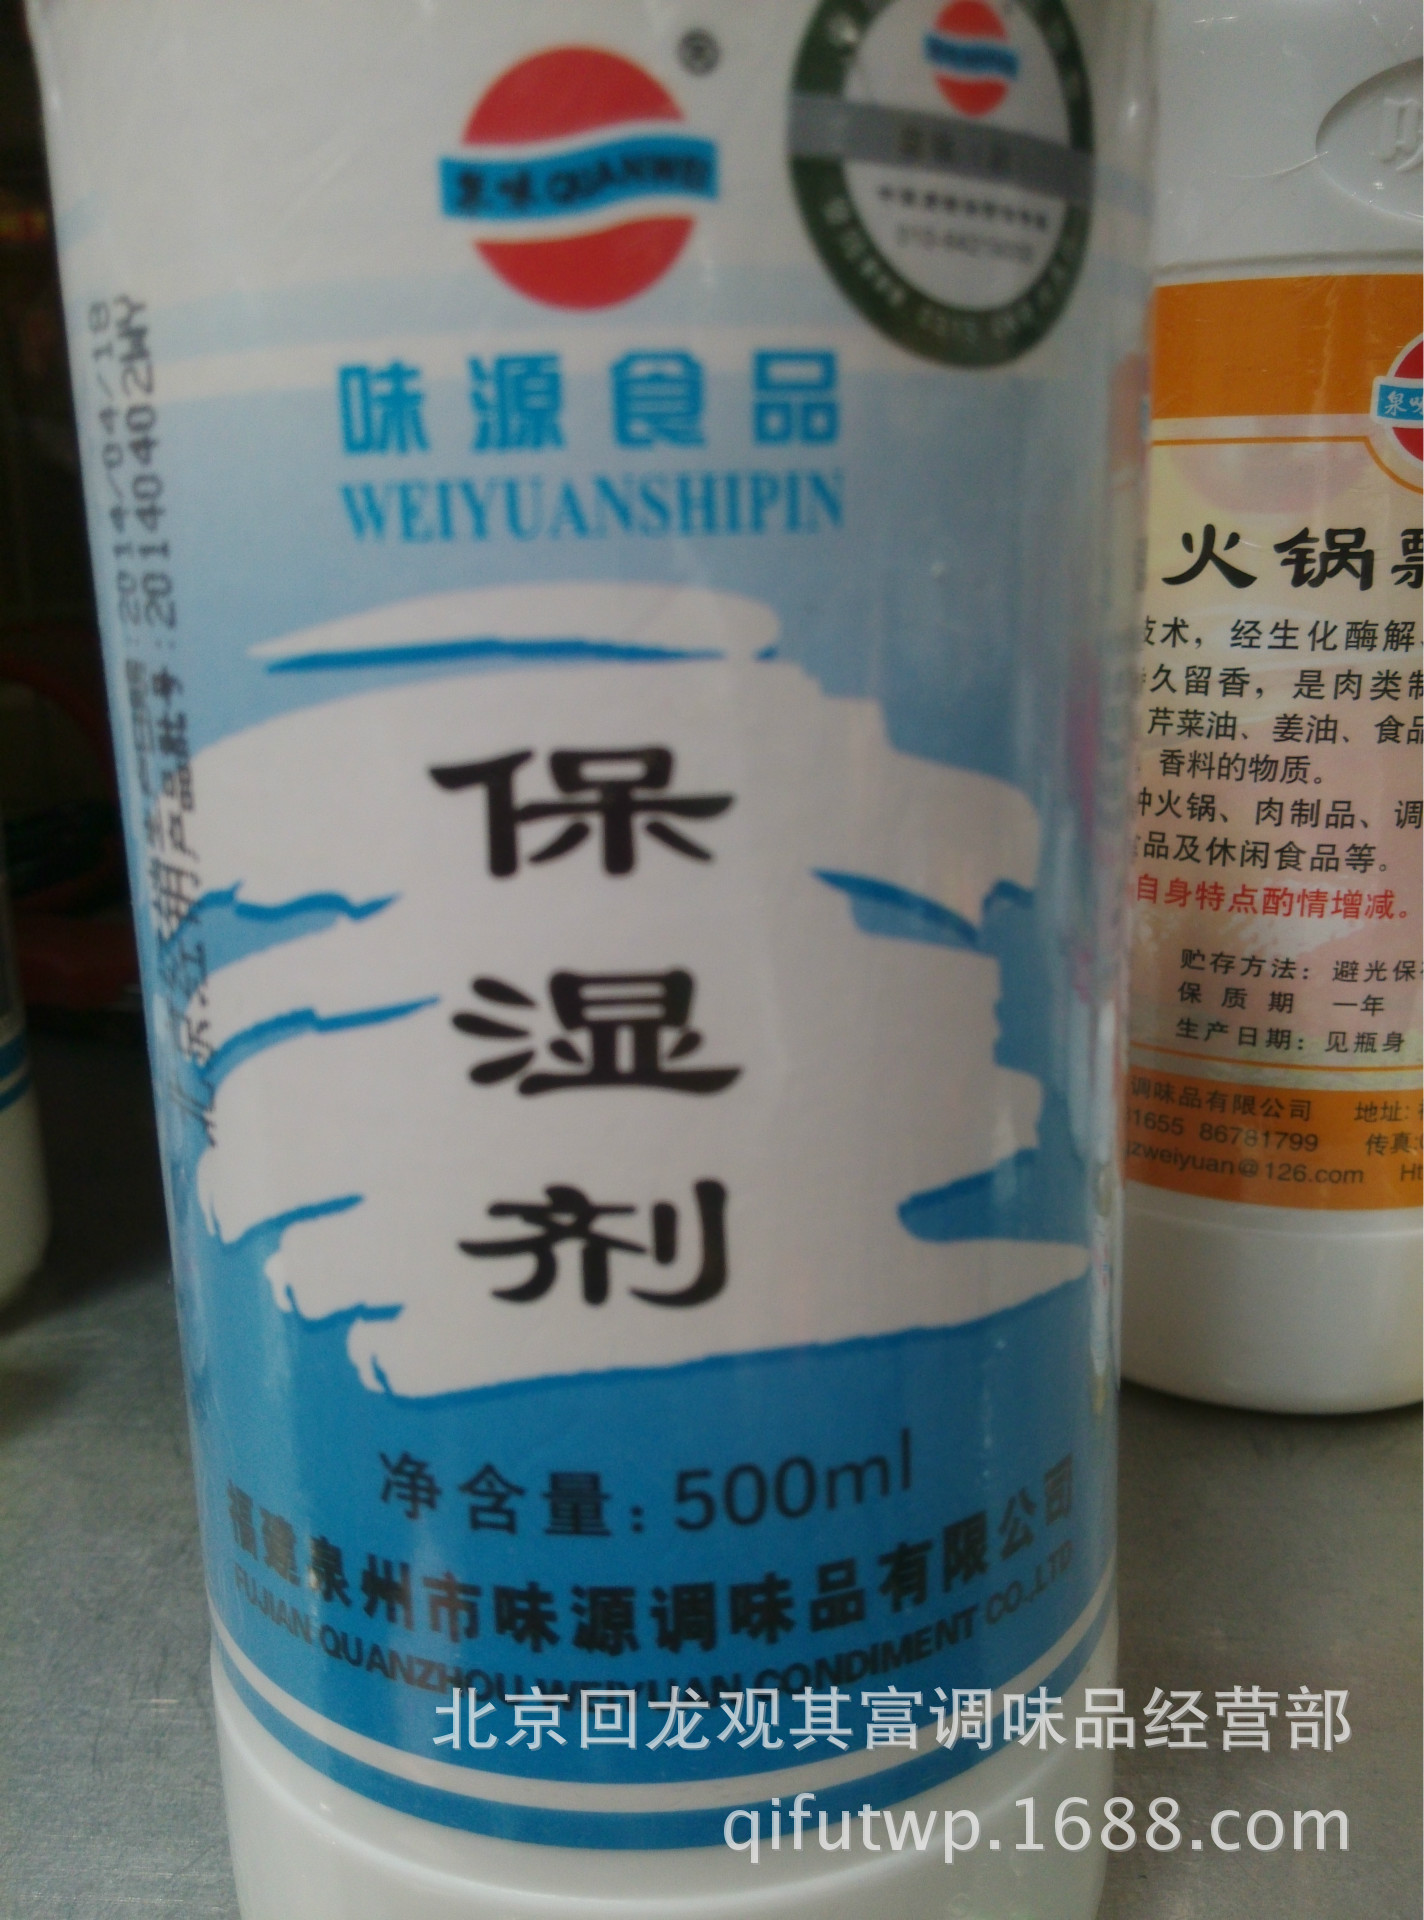 产品名称:保湿剂 净 含 量:500ml 食用方法:保湿剂 保 质 期